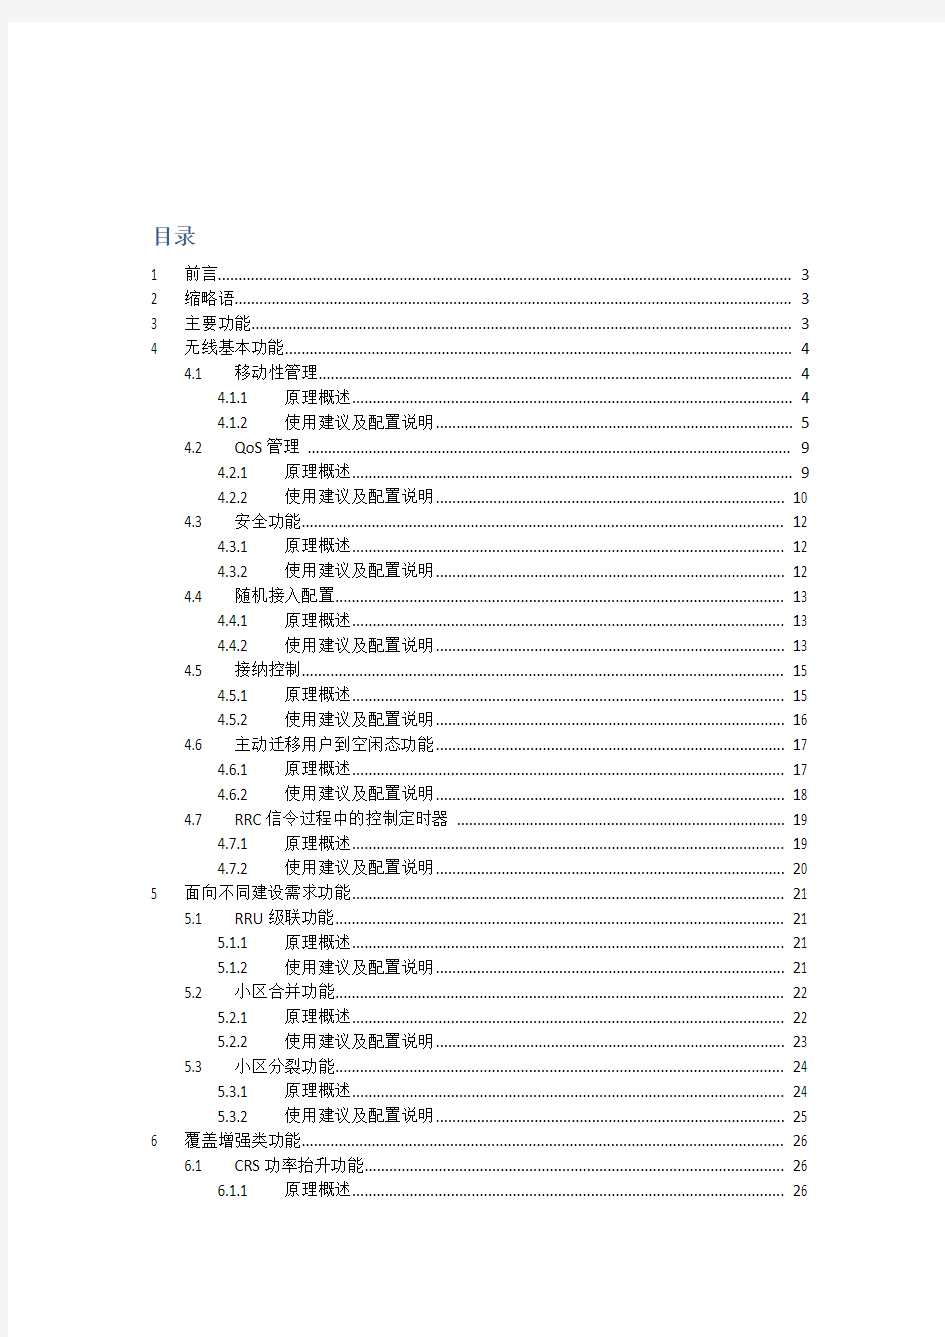 中国移动4g网络制式、频段、优点介绍(完整版)